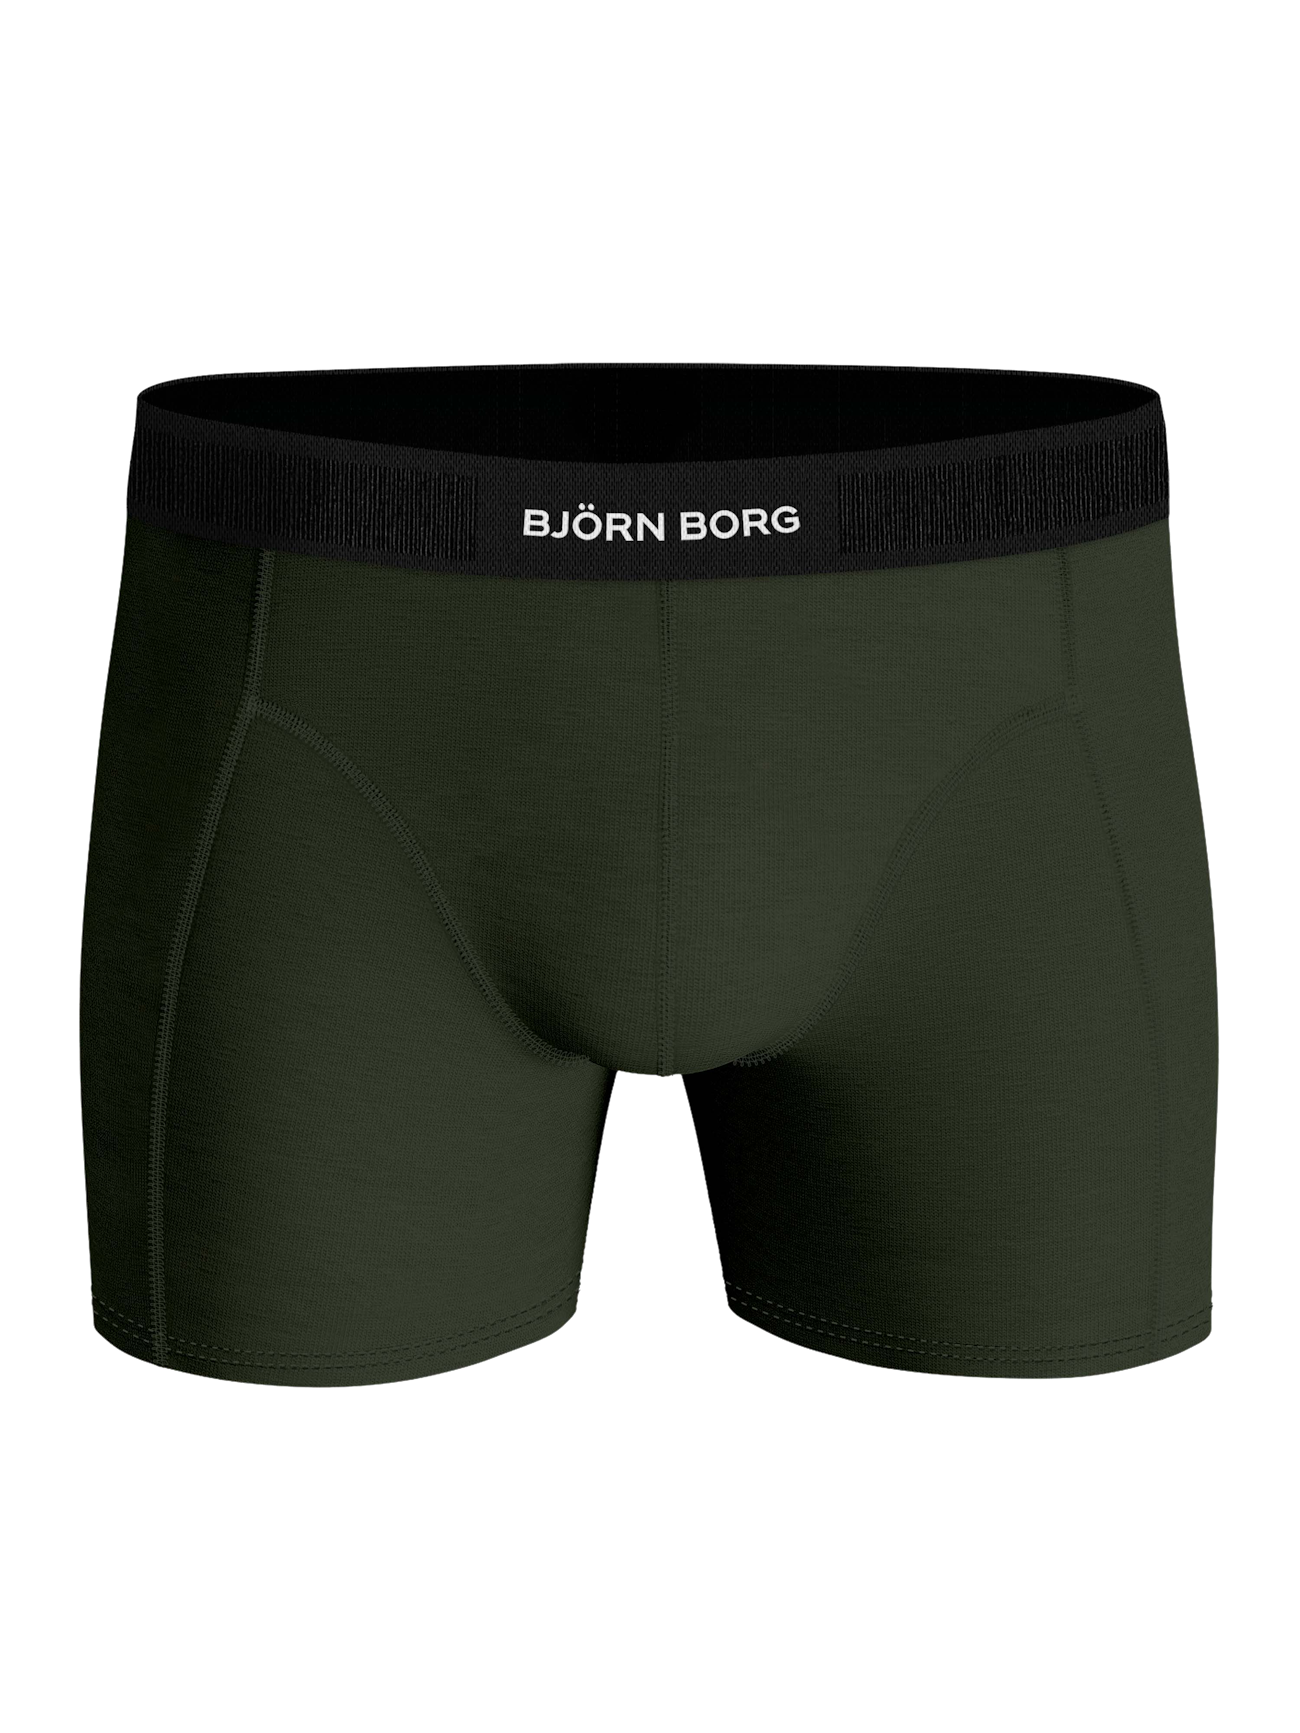 Rib Soft Big Pouch Underwear Custom Boxers Grey Customized Mens